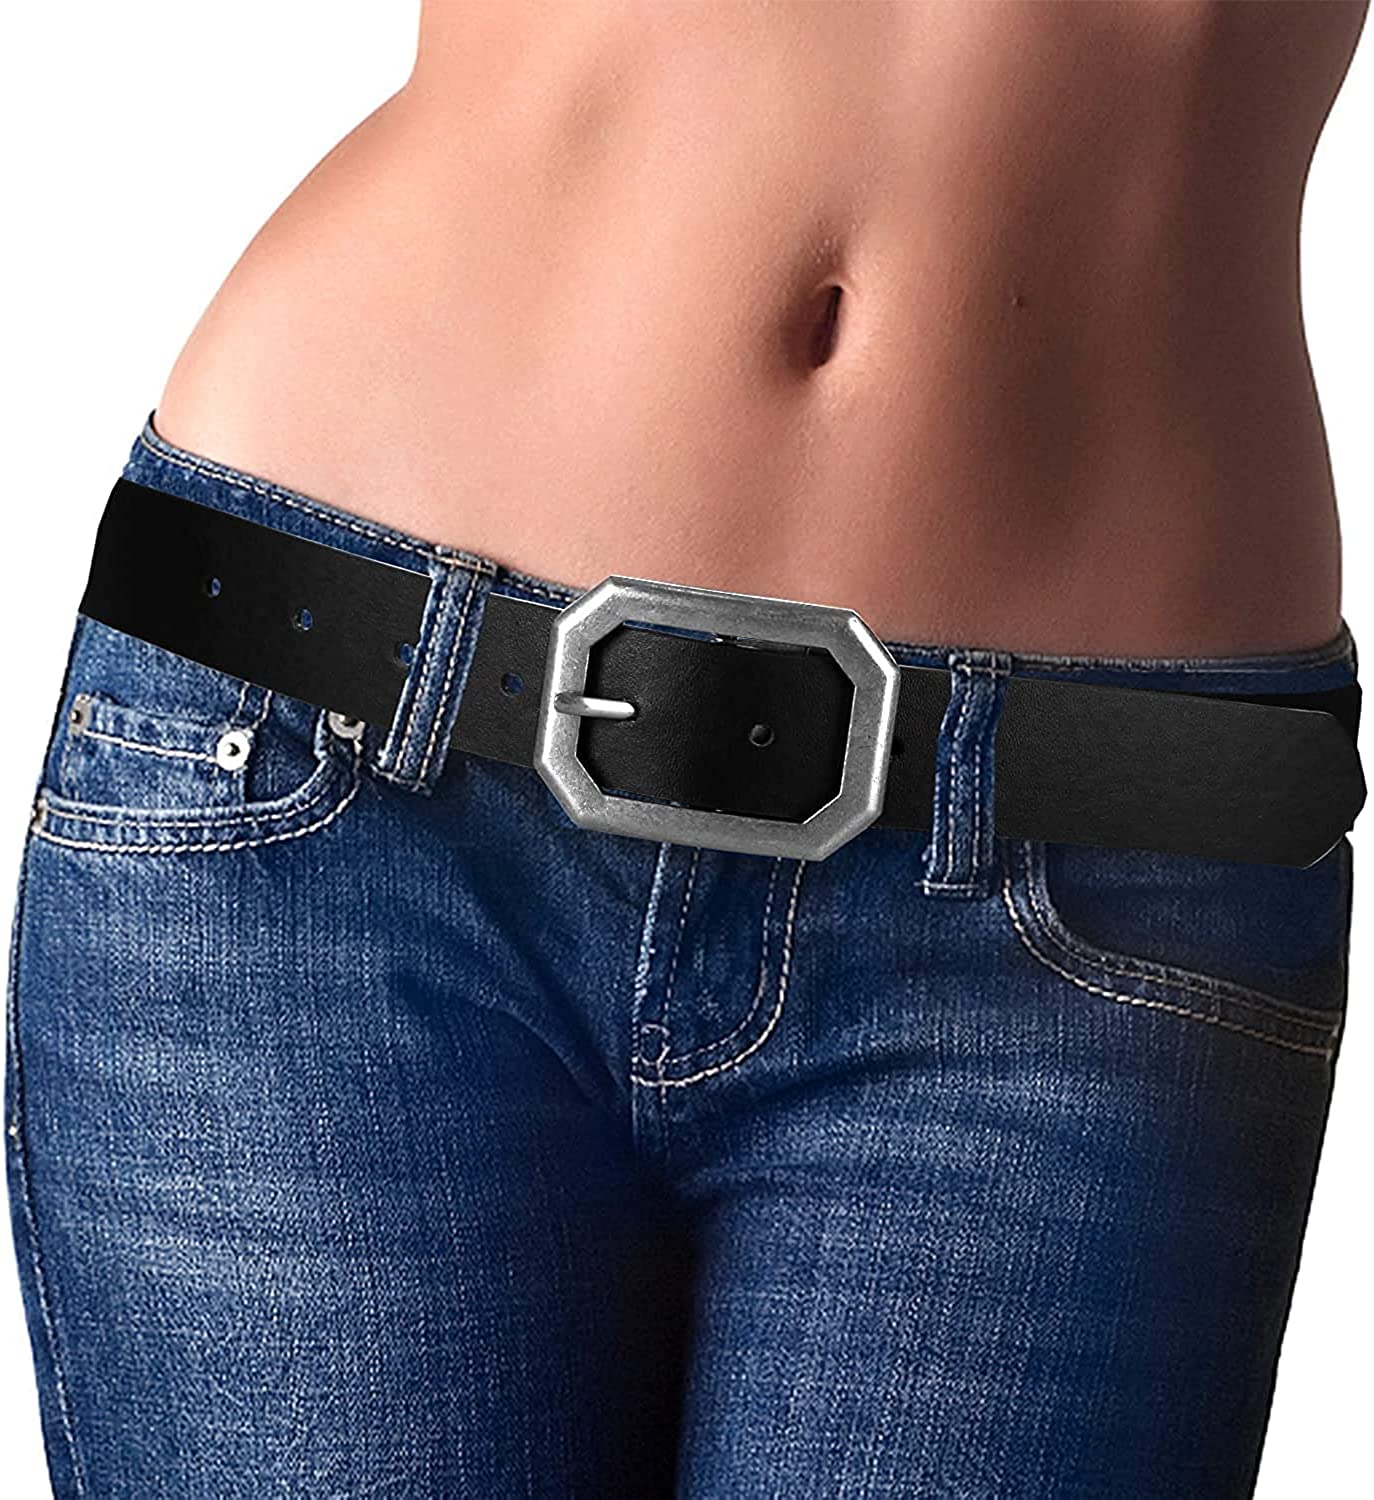  Low Rise Belt Women's Leather Belt Low Waist Belt